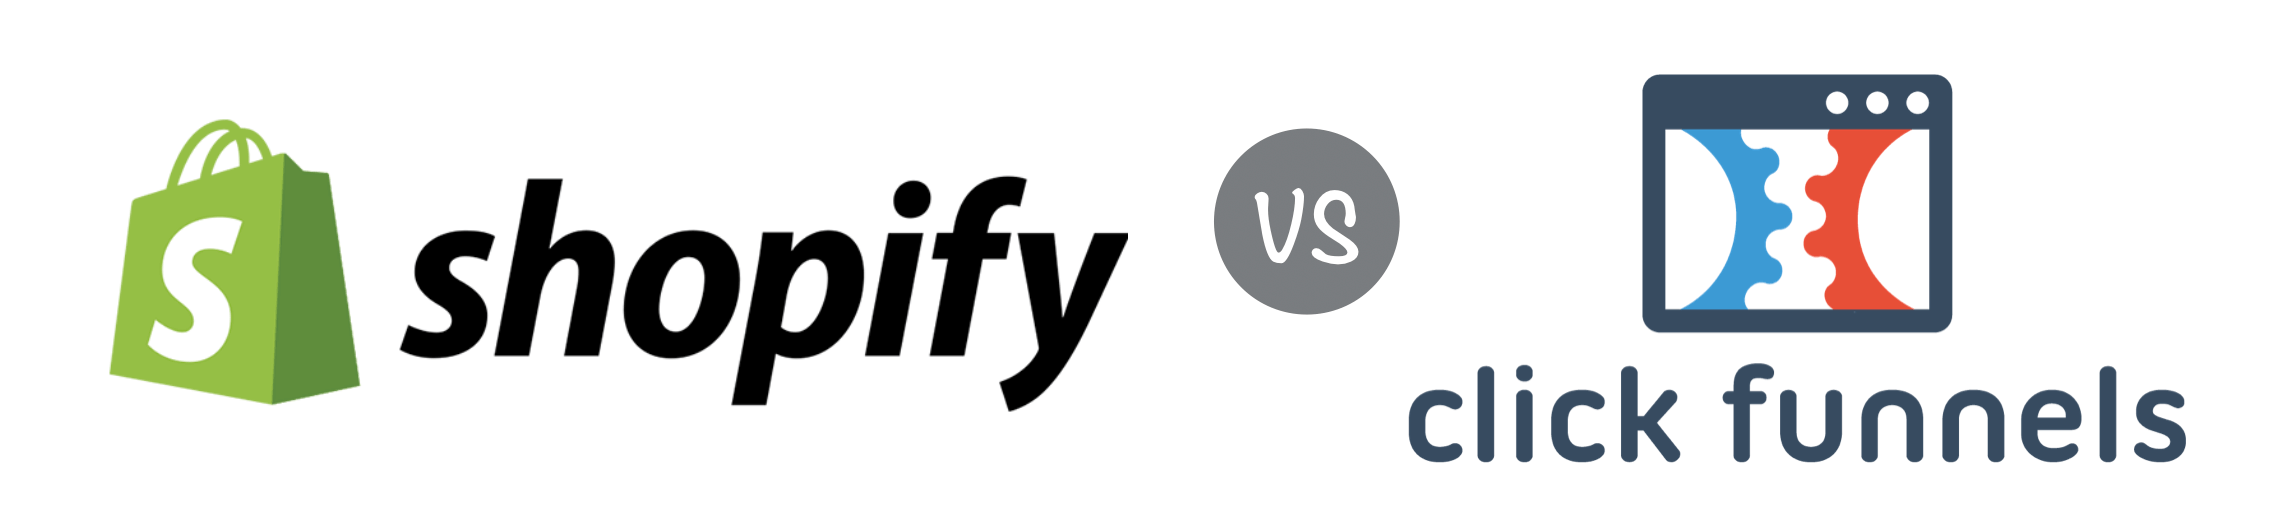 Shopify-clickfunnels-comparison